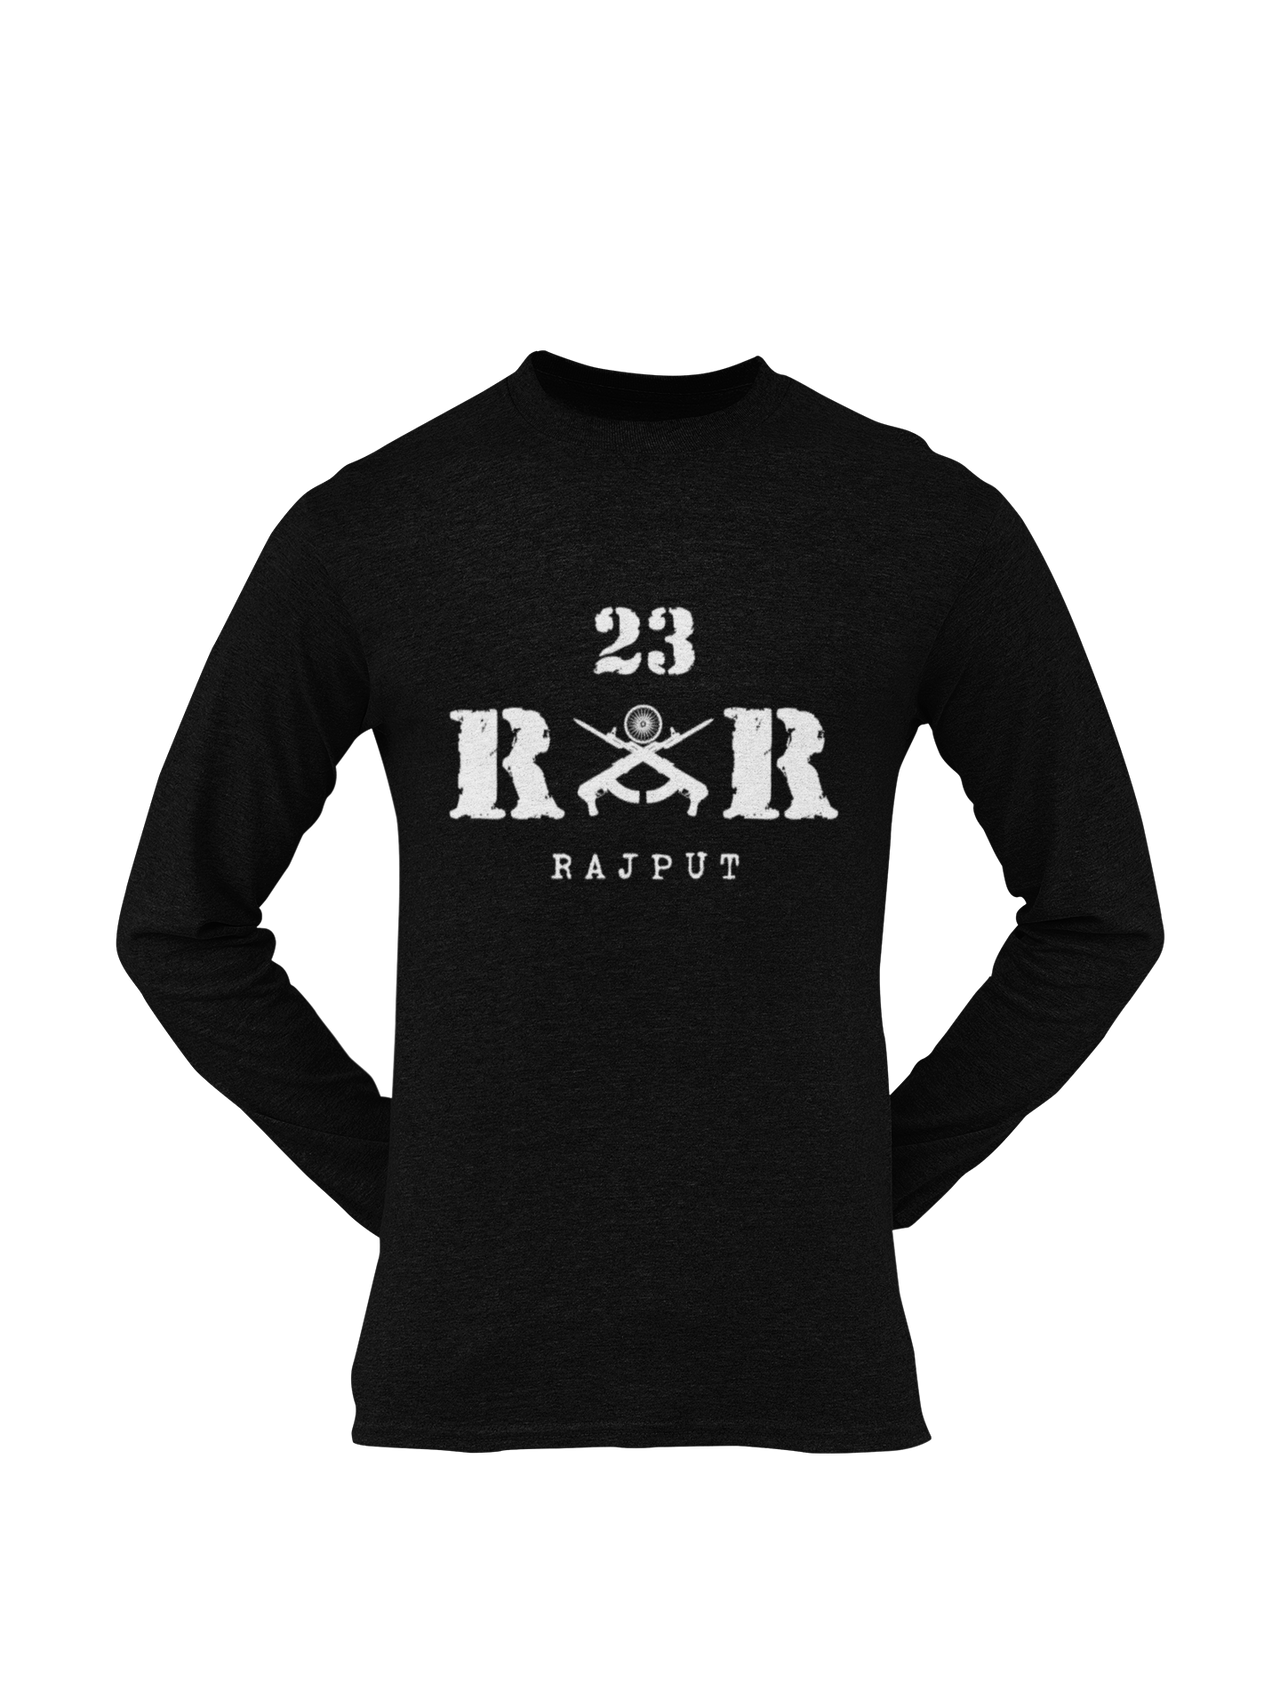 Rashtriya Rifles T-shirt - 23 RR Rajput (Men)